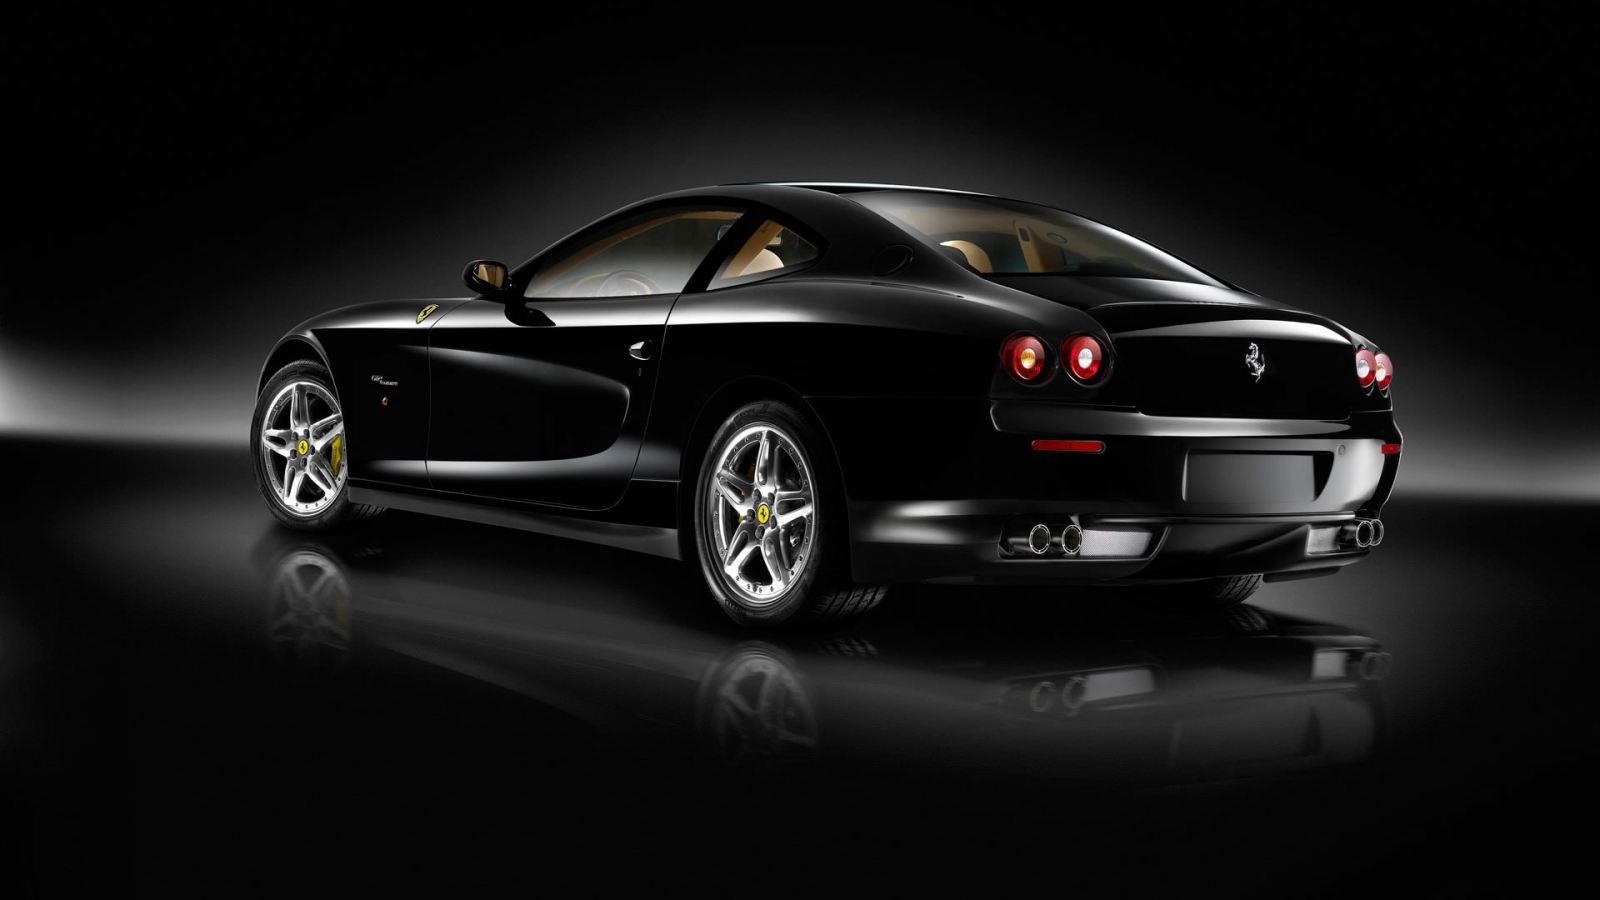 Superb Black Ferrari for 1600 x 900 HDTV resolution